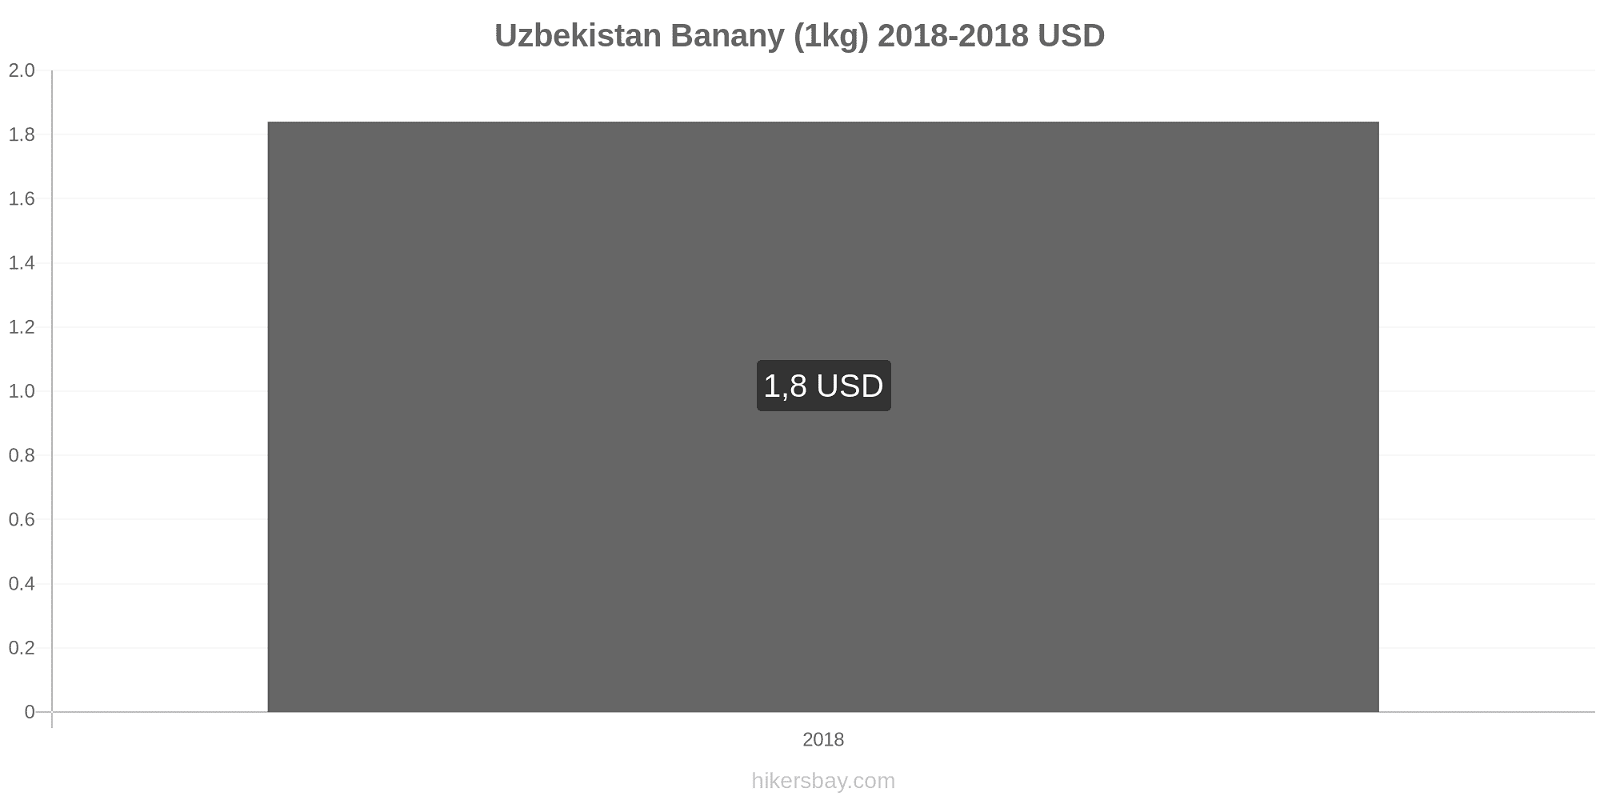 Uzbekistan zmiany cen Banany (1kg) hikersbay.com